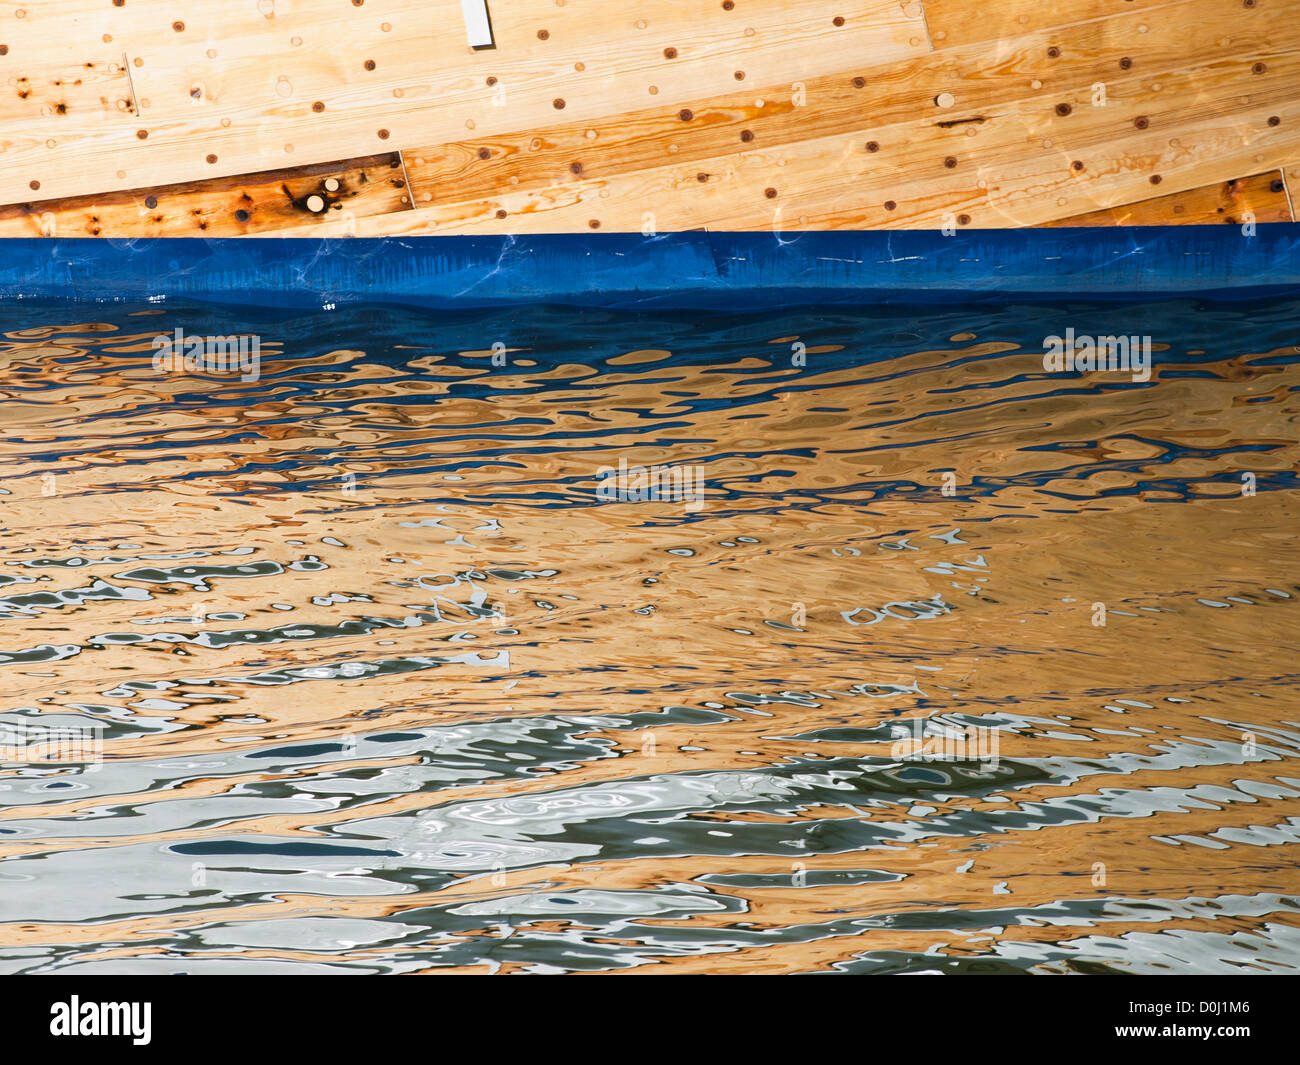 La barca di legno e la sua immagine riflessa sulle increspature nell'acqua di mare, Oslo Norvegia Foto Stock